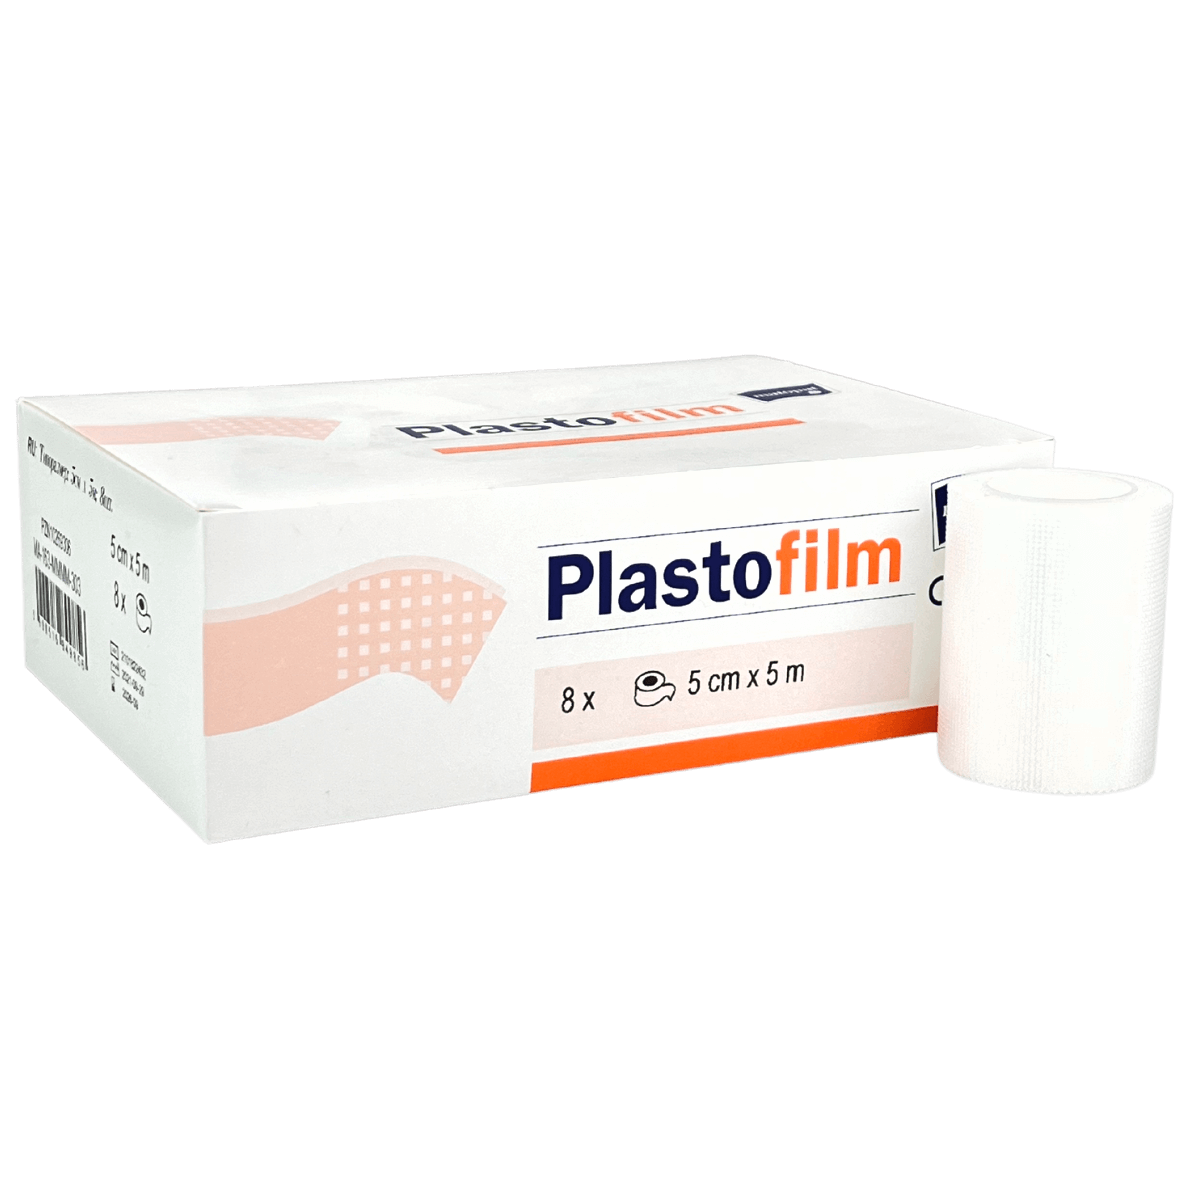 Plastofilm 5x5